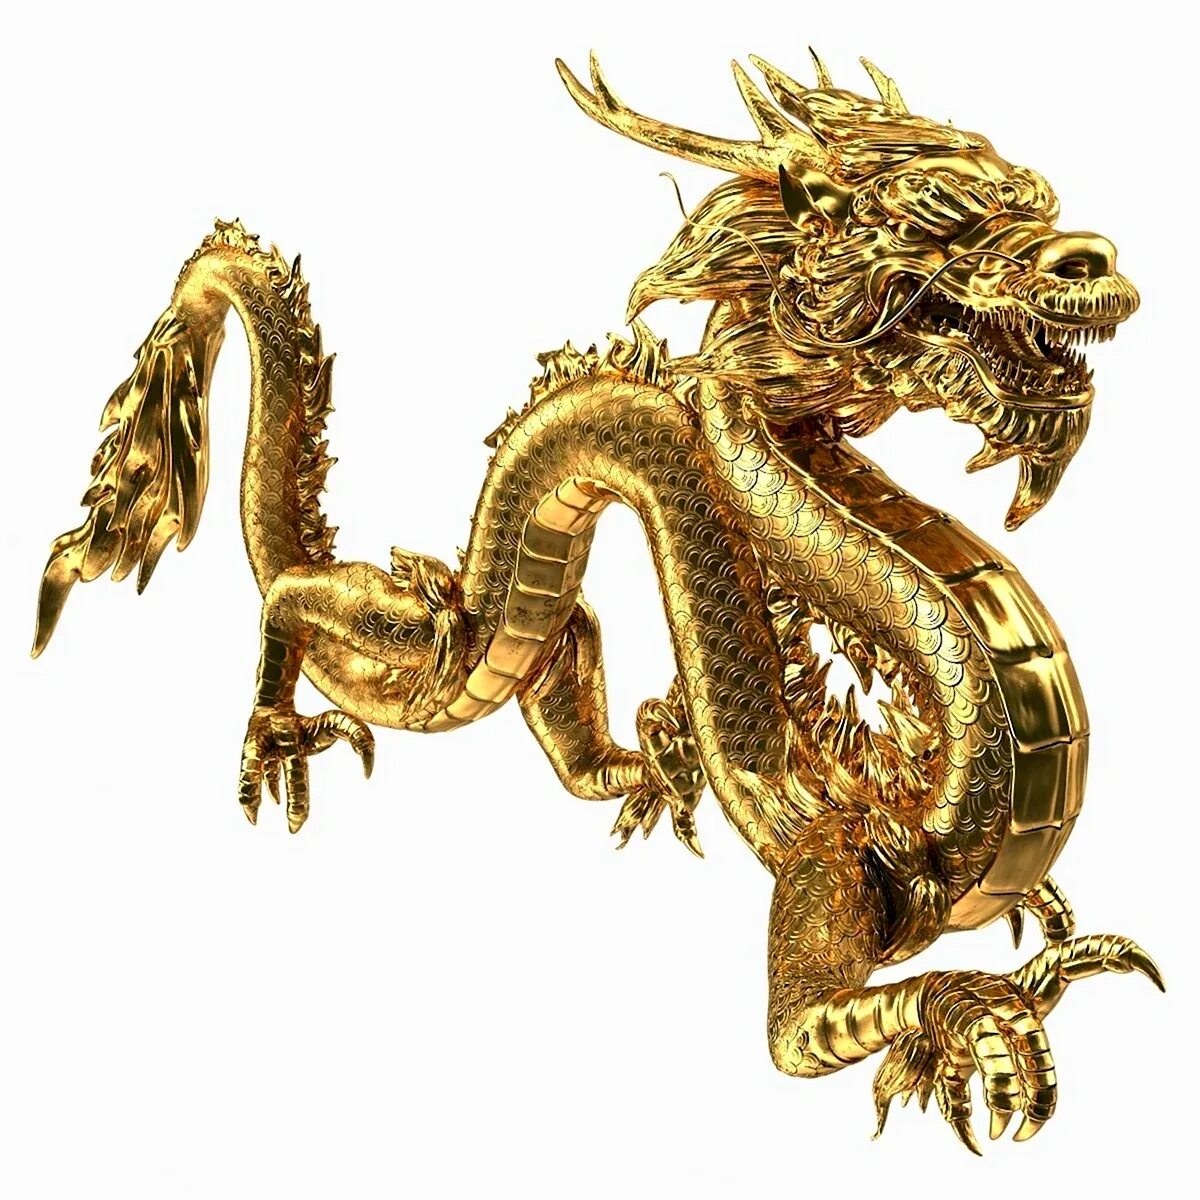 Zolotoy Drakon/золотой дракон. Статуя золотого дракона Китай. Китай дракон символ императора. Золотой дракон в китайской мифологии.